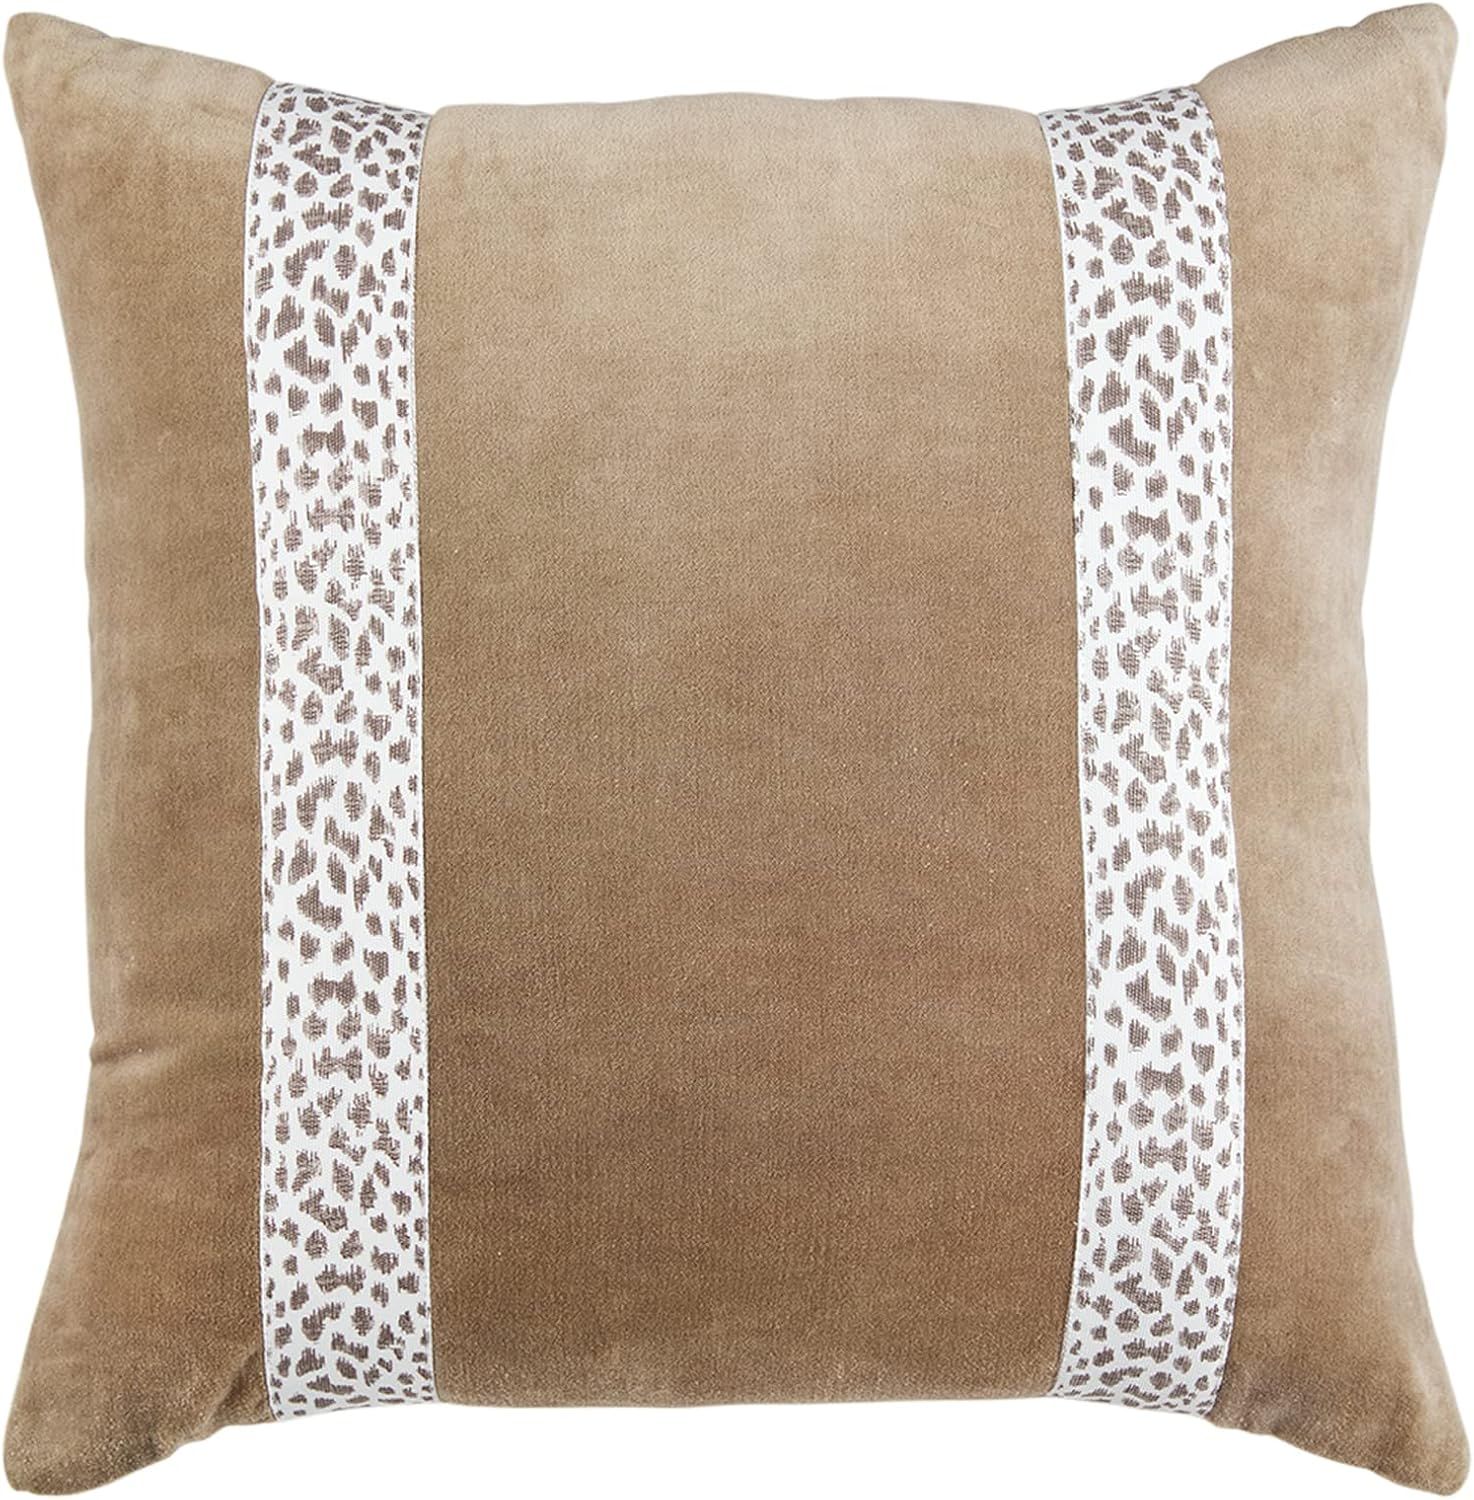 Mud Pie Brown Leopard Trim Pillow, 20" x 20", Square | Amazon (US)